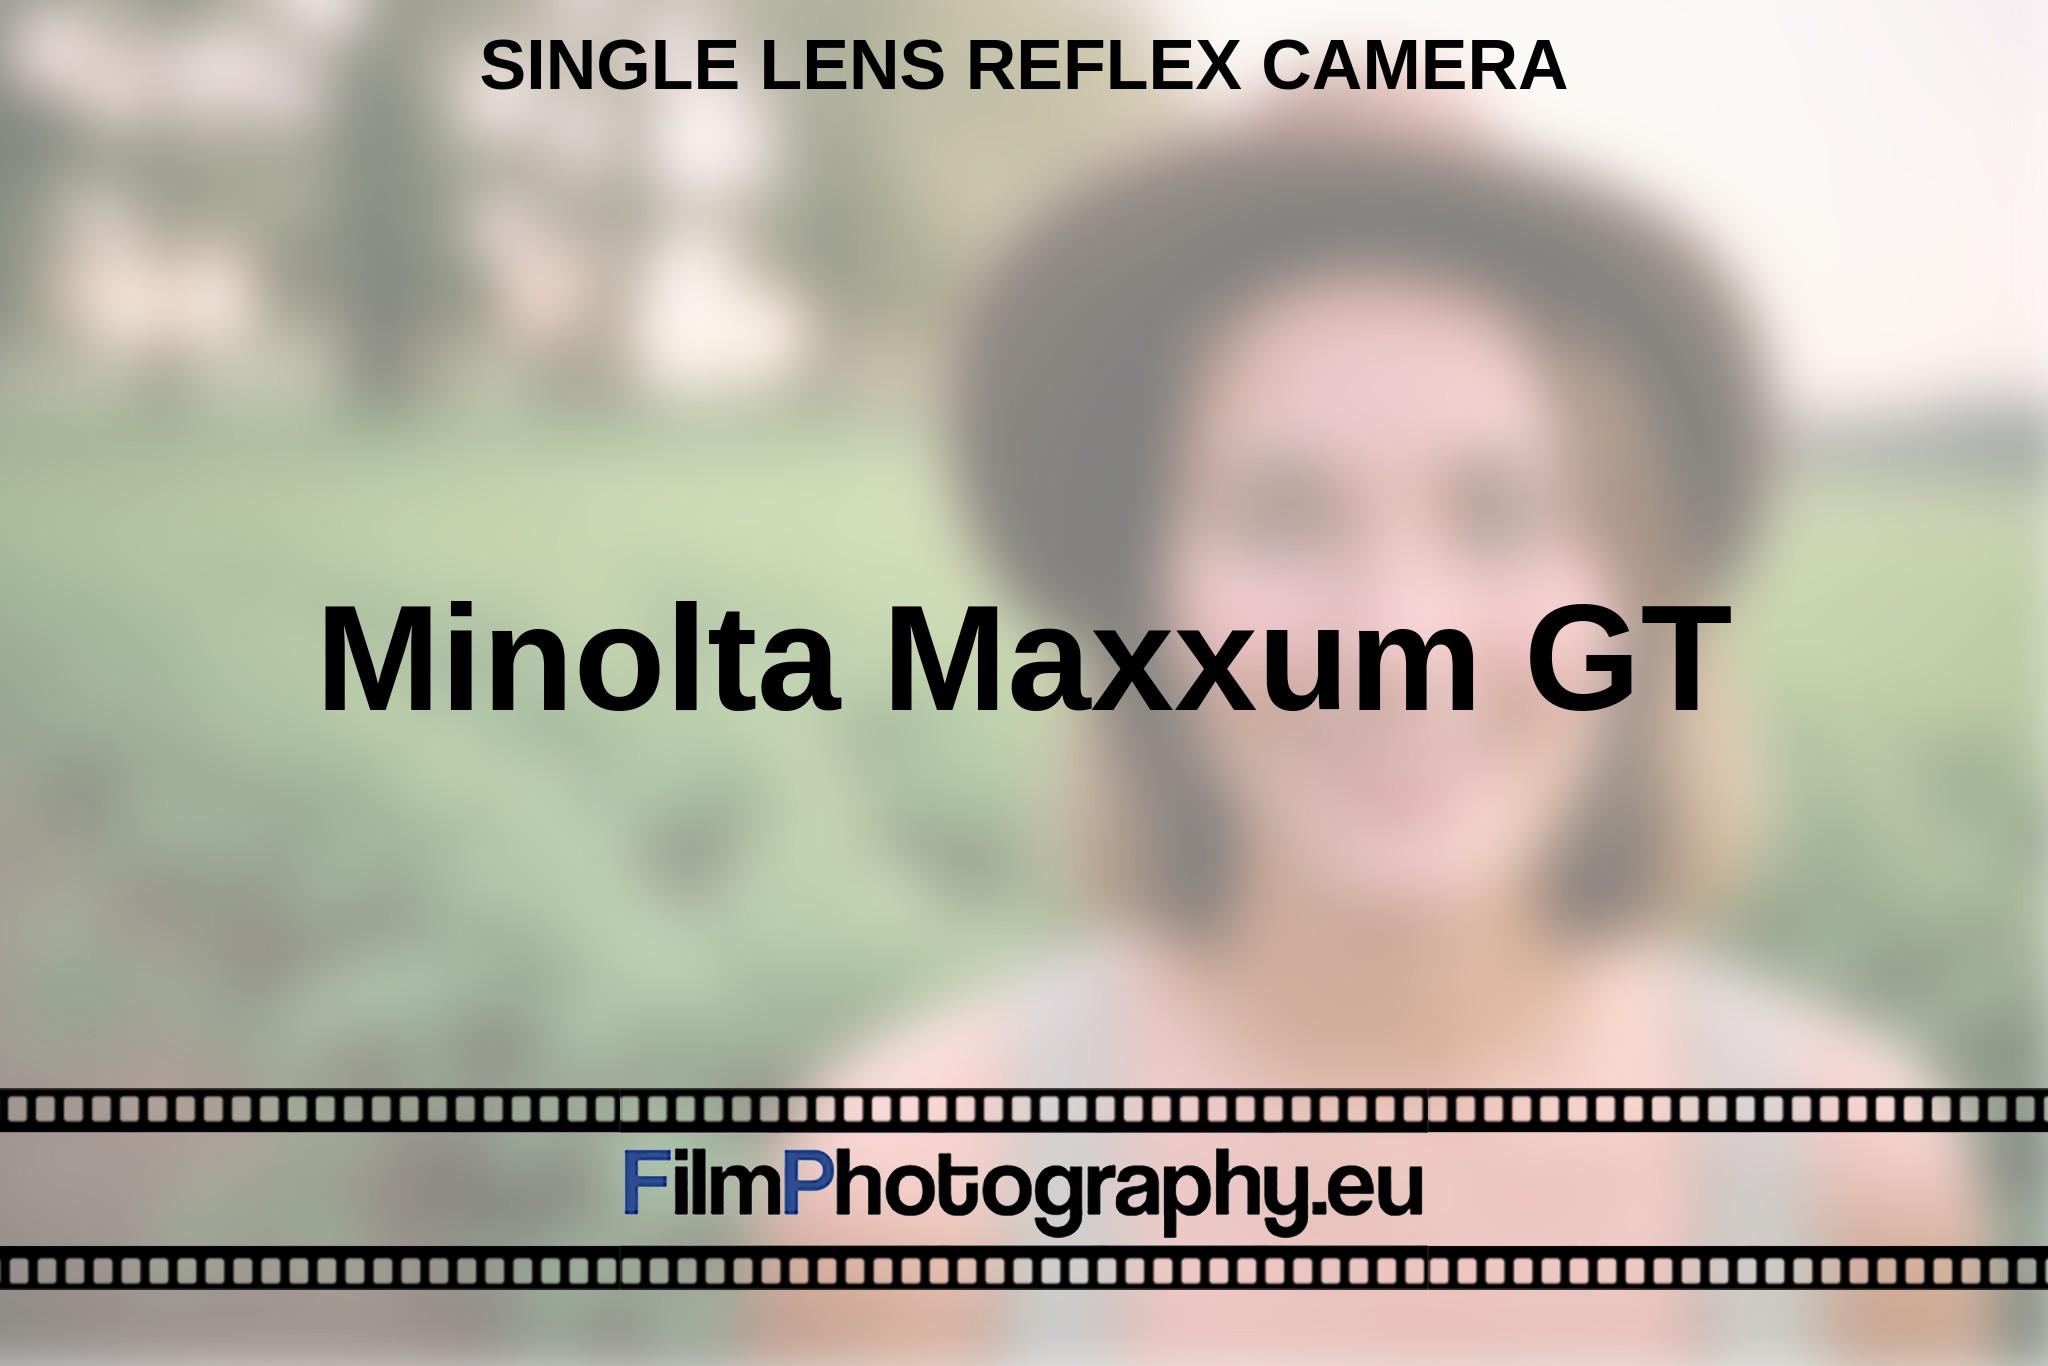 minolta-maxxum-gt-single-lens-reflex-camera-en-bnv.jpg